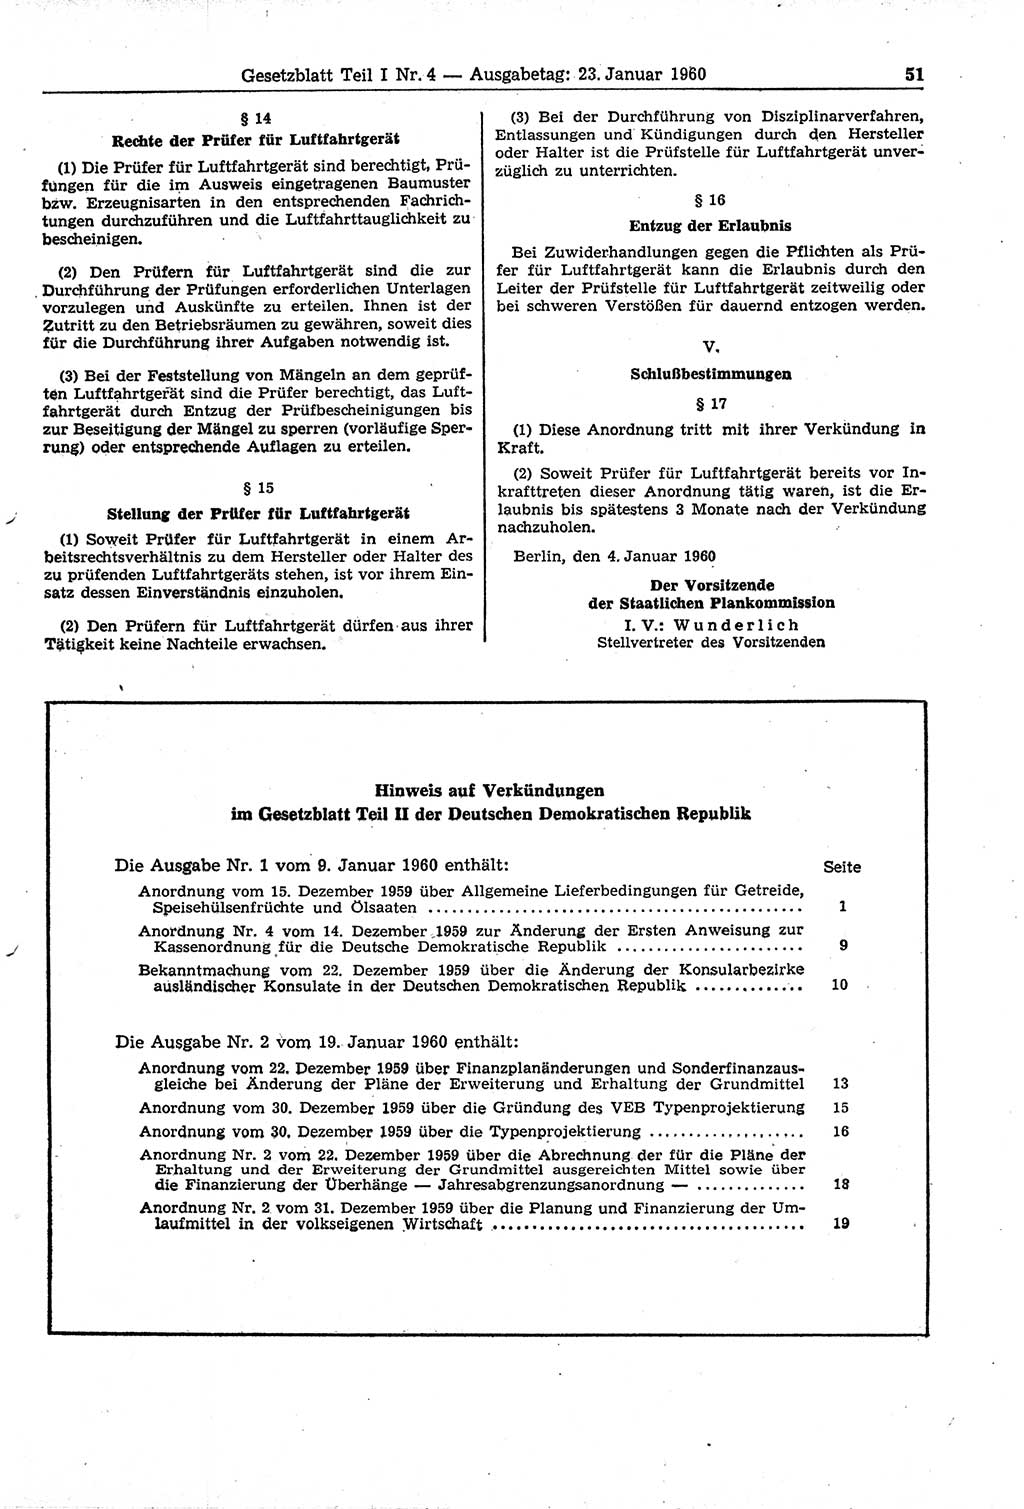 Gesetzblatt (GBl.) der Deutschen Demokratischen Republik (DDR) Teil Ⅰ 1960, Seite 51 (GBl. DDR Ⅰ 1960, S. 51)